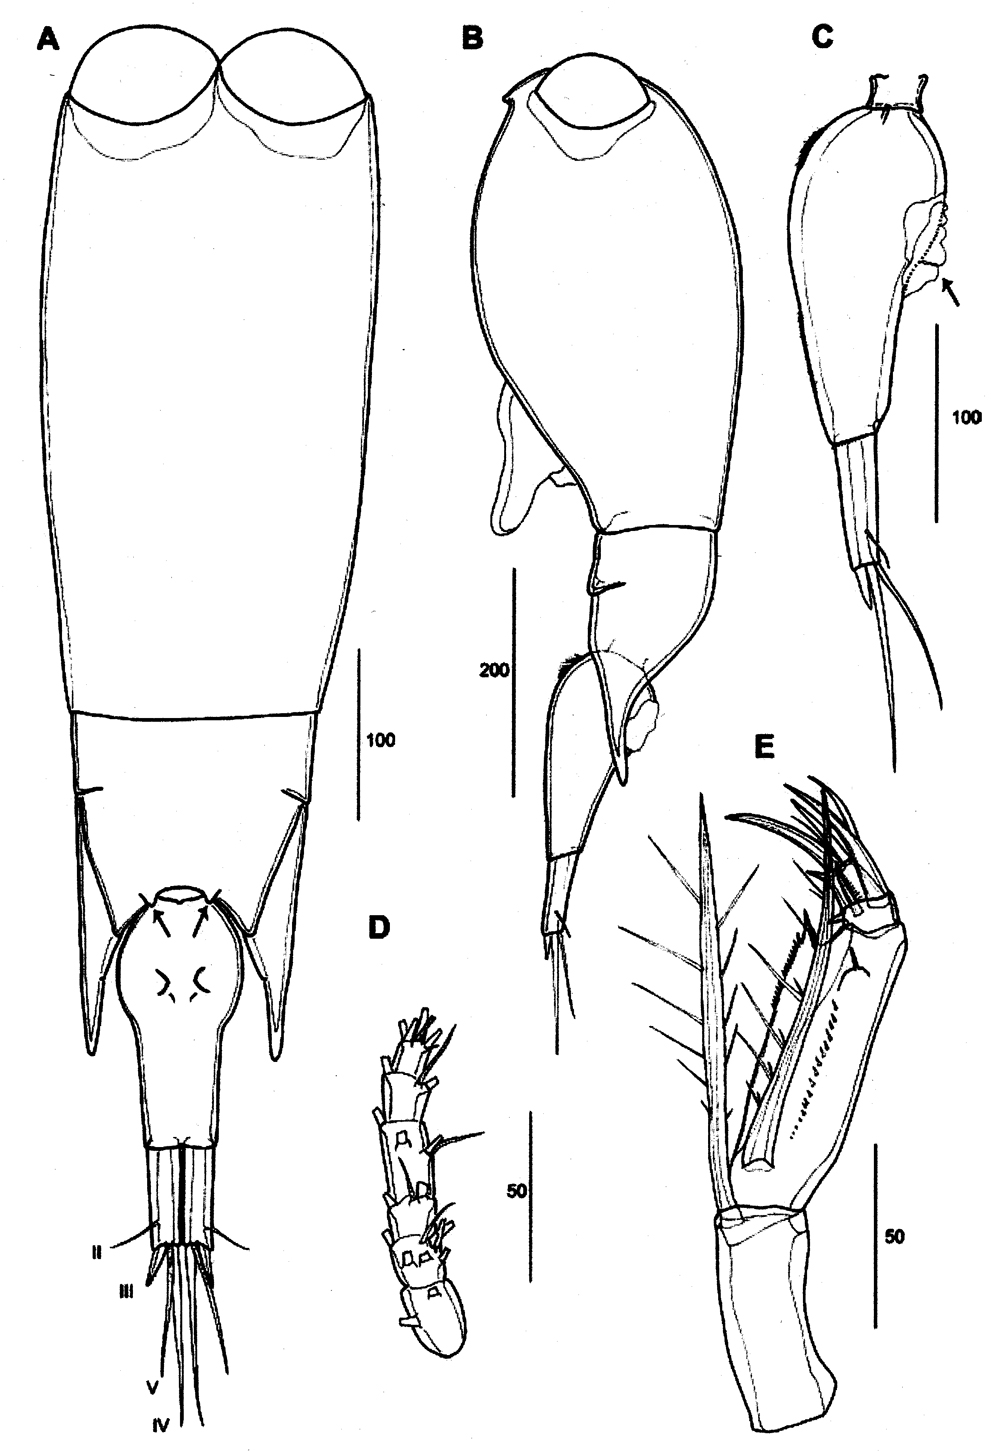 Espce Farranula orbisa - Planche 1 de figures morphologiques